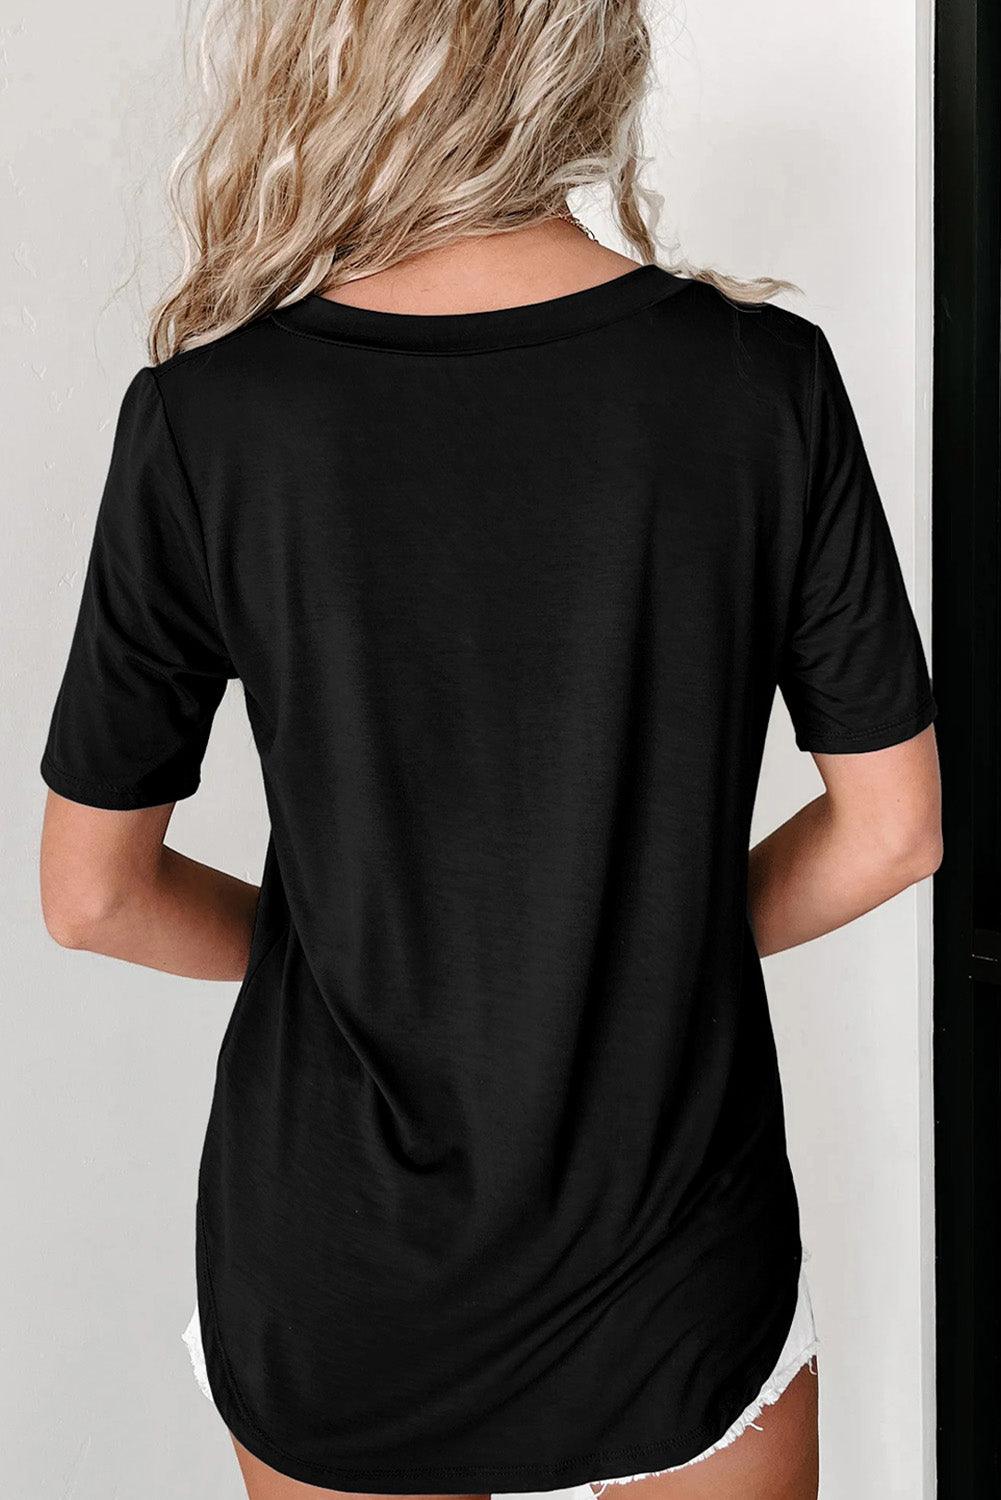 Black Sequined Flower Pocketed V Neck T Shirt - L & M Kee, LLC